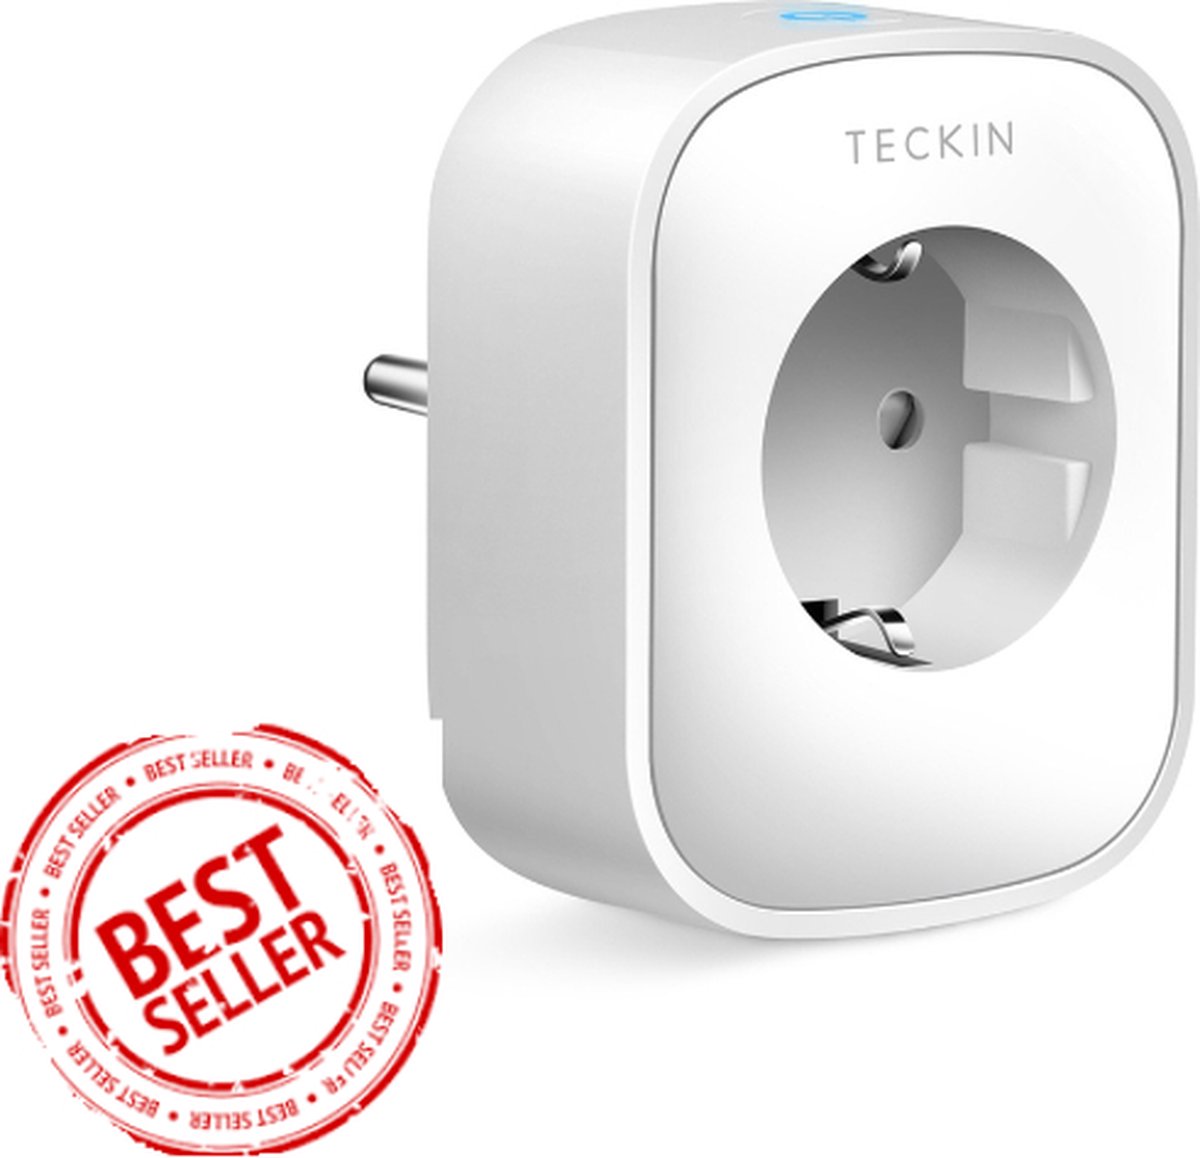 Teckin Slimme Stekker - 16 A - Smart Plug - Incl. Tijdschakelaar & Energiemeter - Google Home & Amazon Alexa Compatible